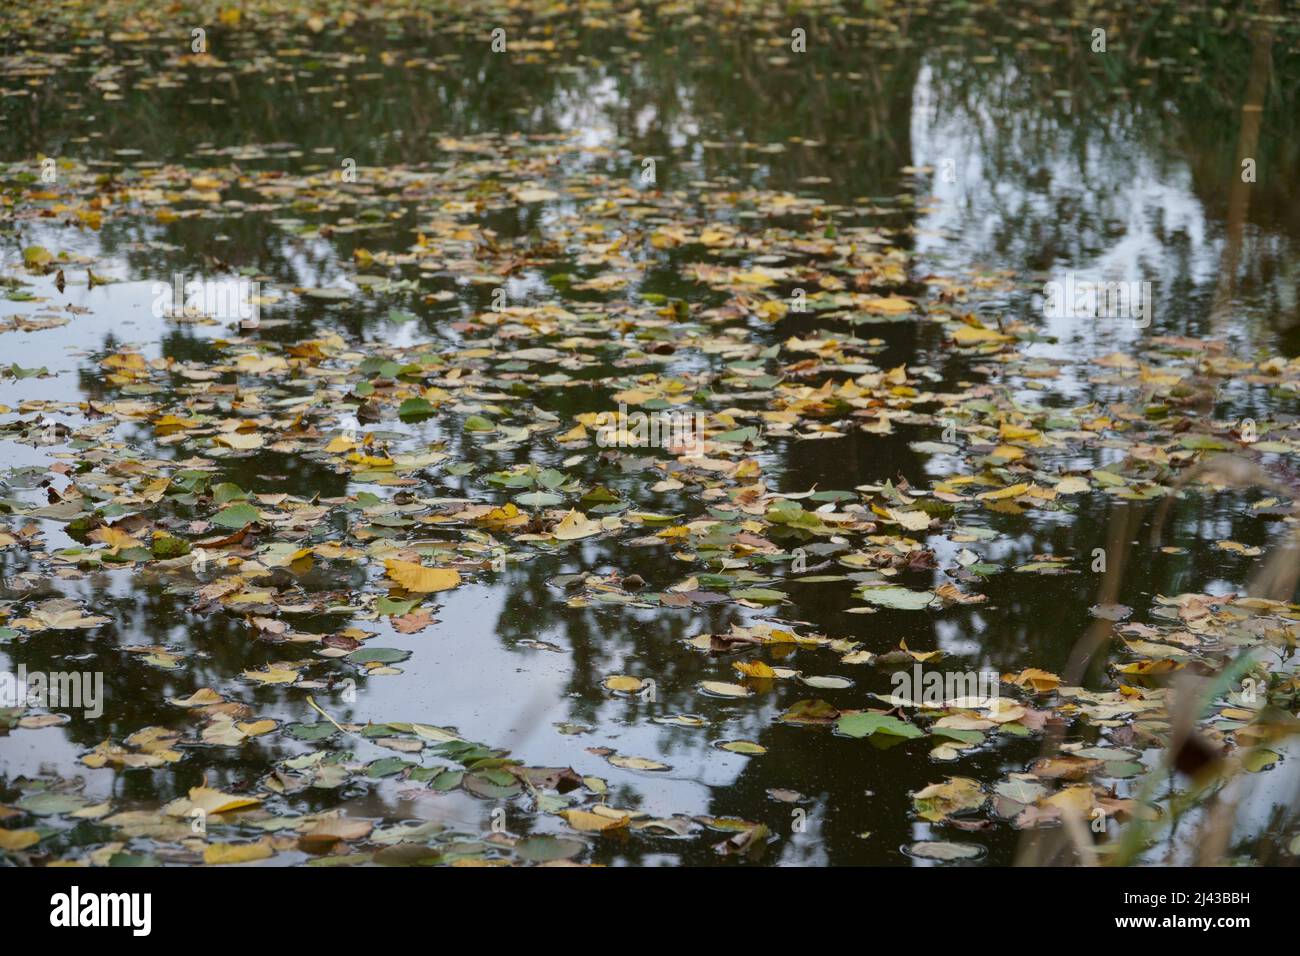 Feuilles d'automne tombées sur la surface calme de l'eau. Scène décorative de la saison d'automne dans la nature sauvage comme une belle vue de la surface de l'étang. Un naturel Banque D'Images